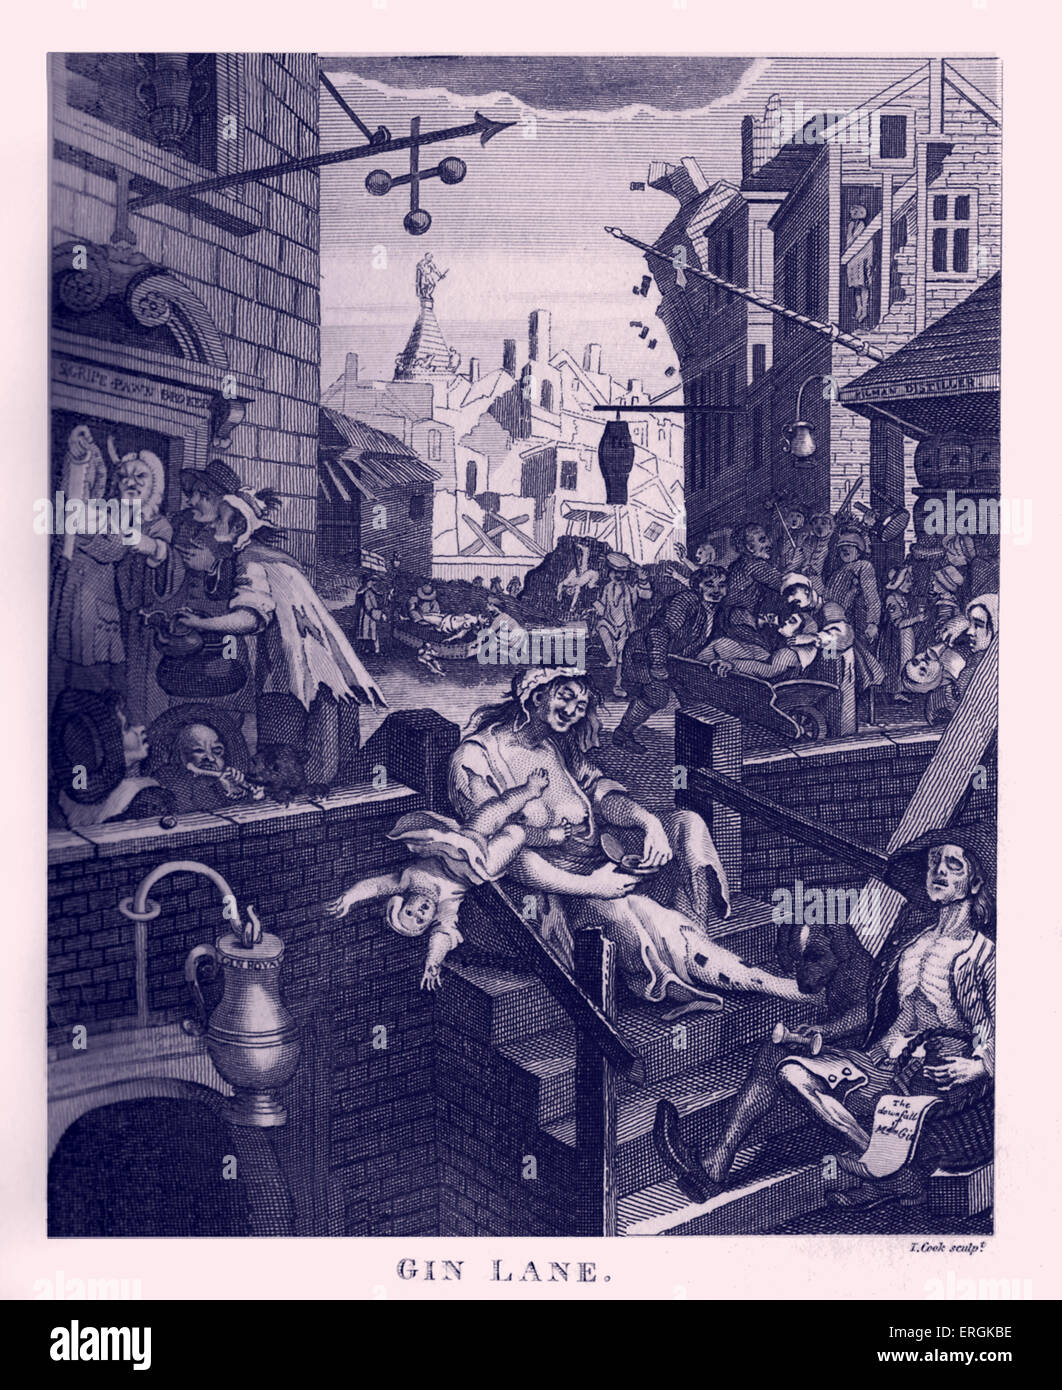 Gin Lane par William Hogarth, 1751. Couplé avec la bière Street, ces gravures ont appuyé la Loi de 1751 Gin.gravé par Thomas Banque D'Images